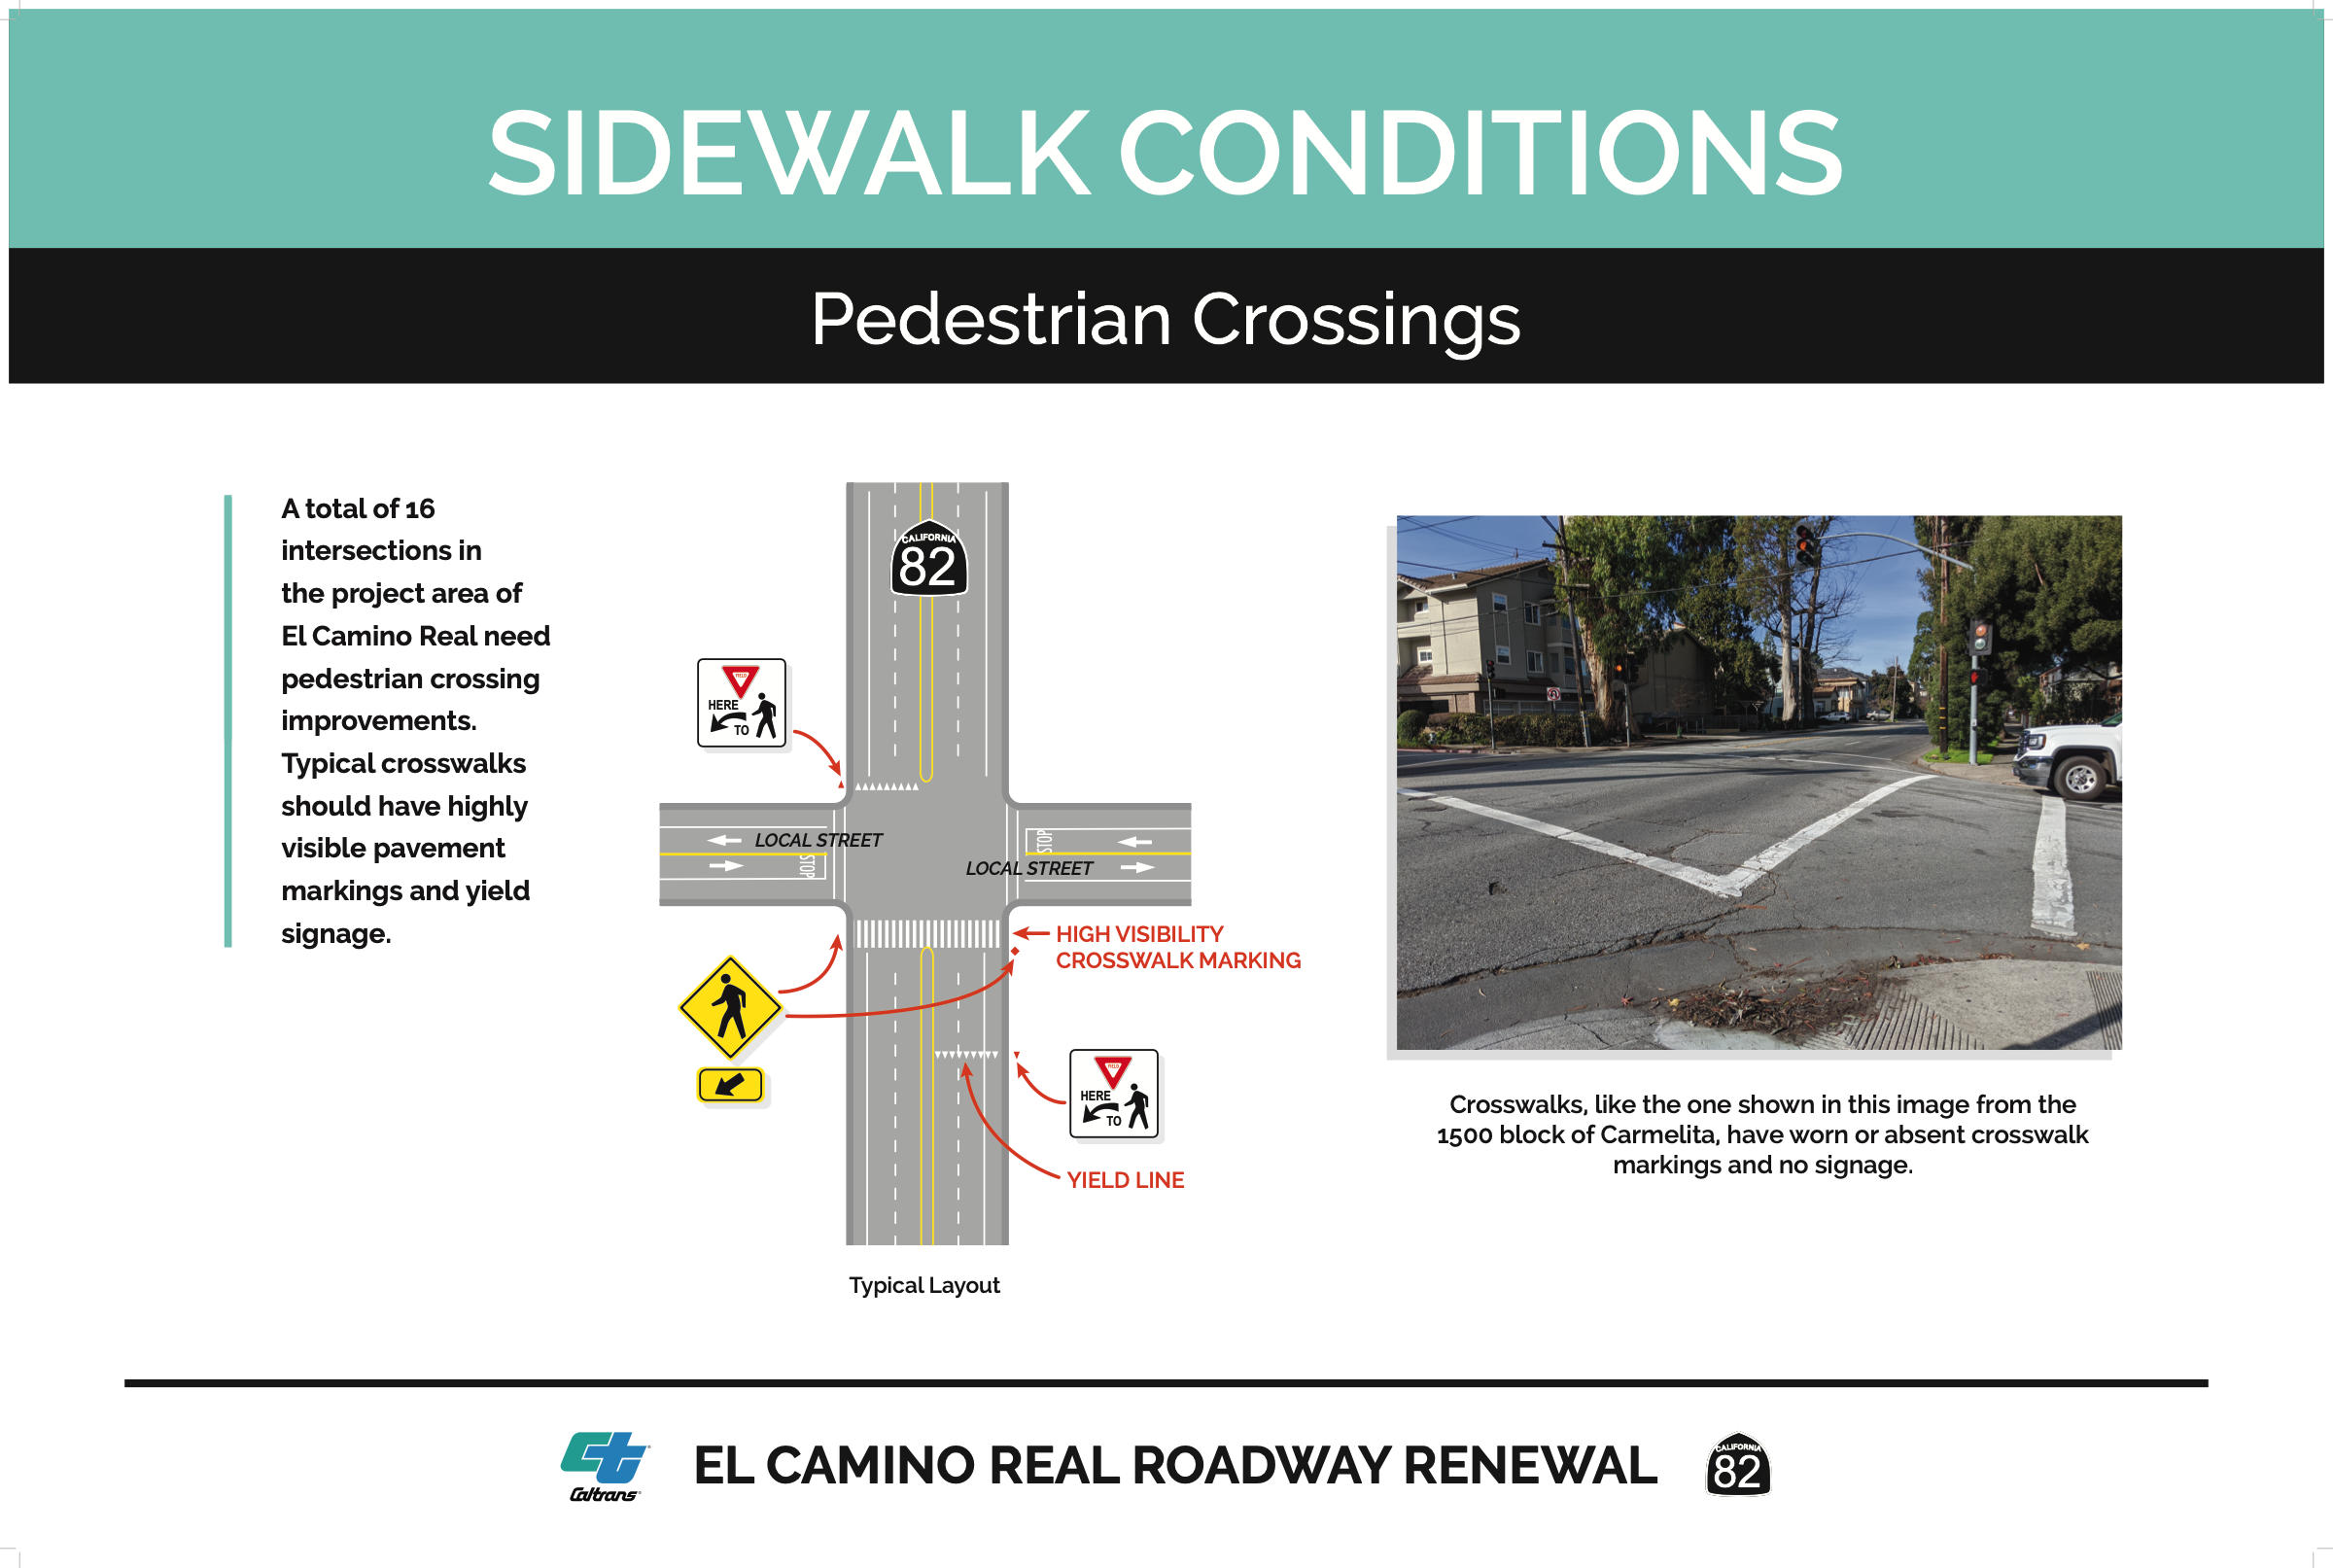 sidewalk conditions - pedestrian crossings